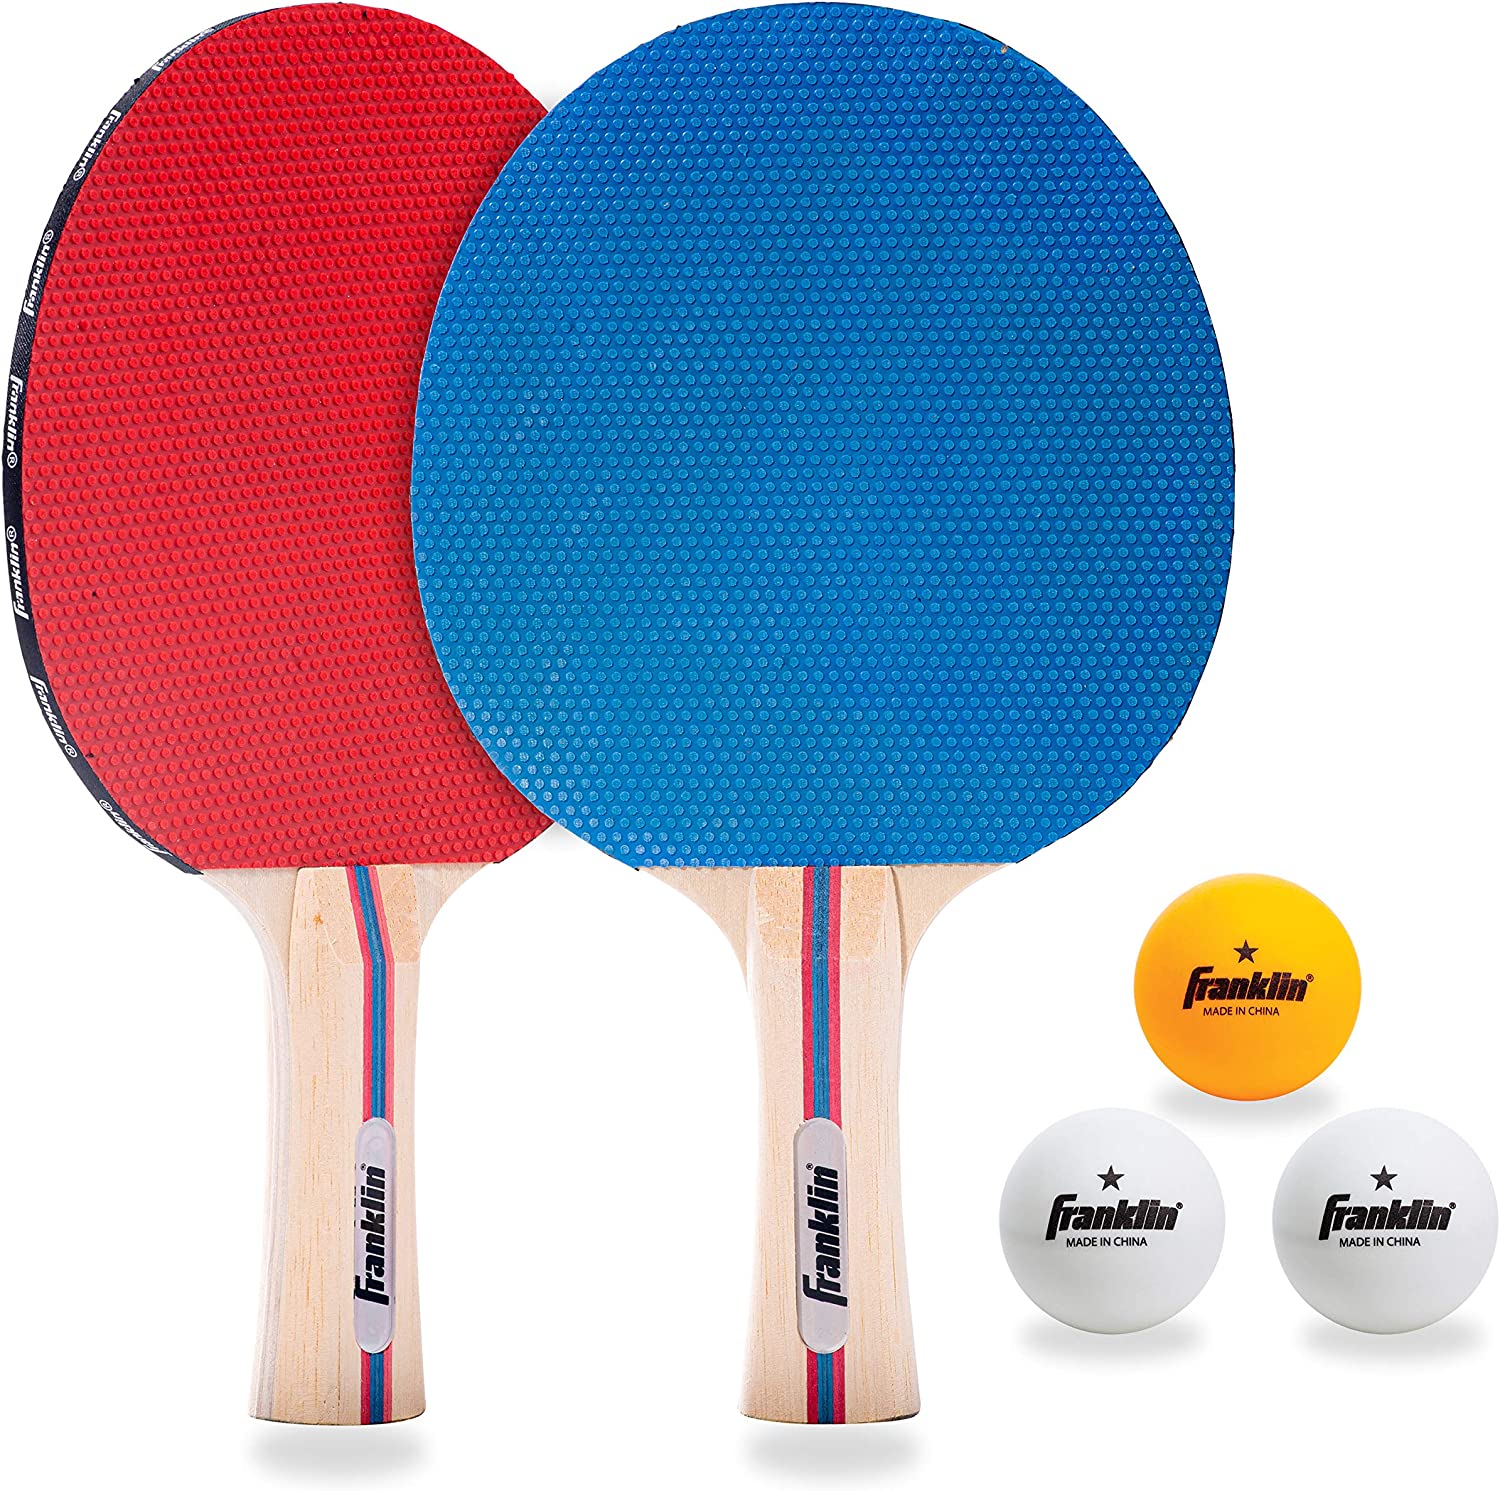 ping pong ball and paddles